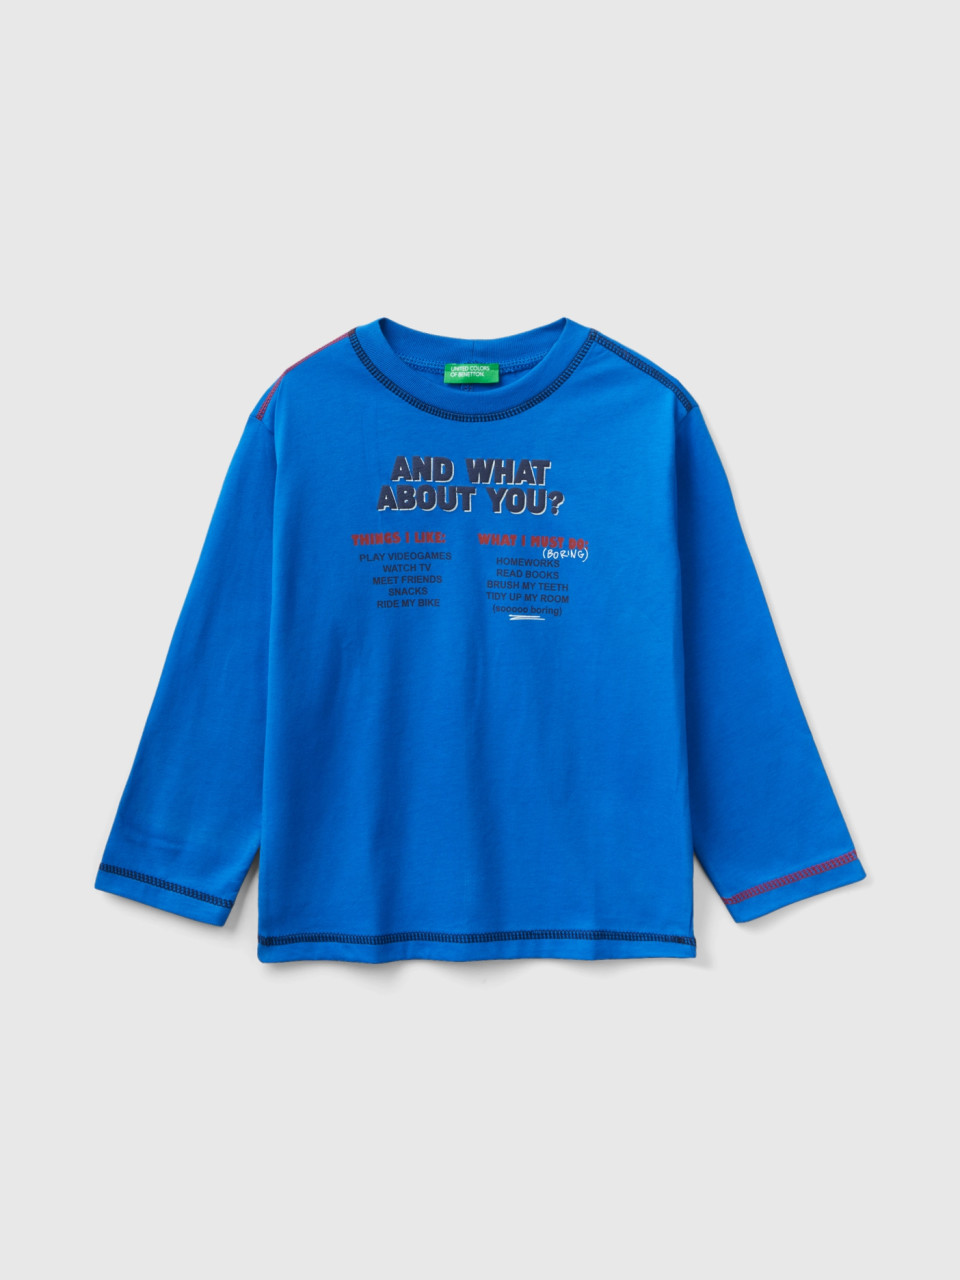 Benetton, Rundhals-shirt Mit Print, Verkehrsblau, male